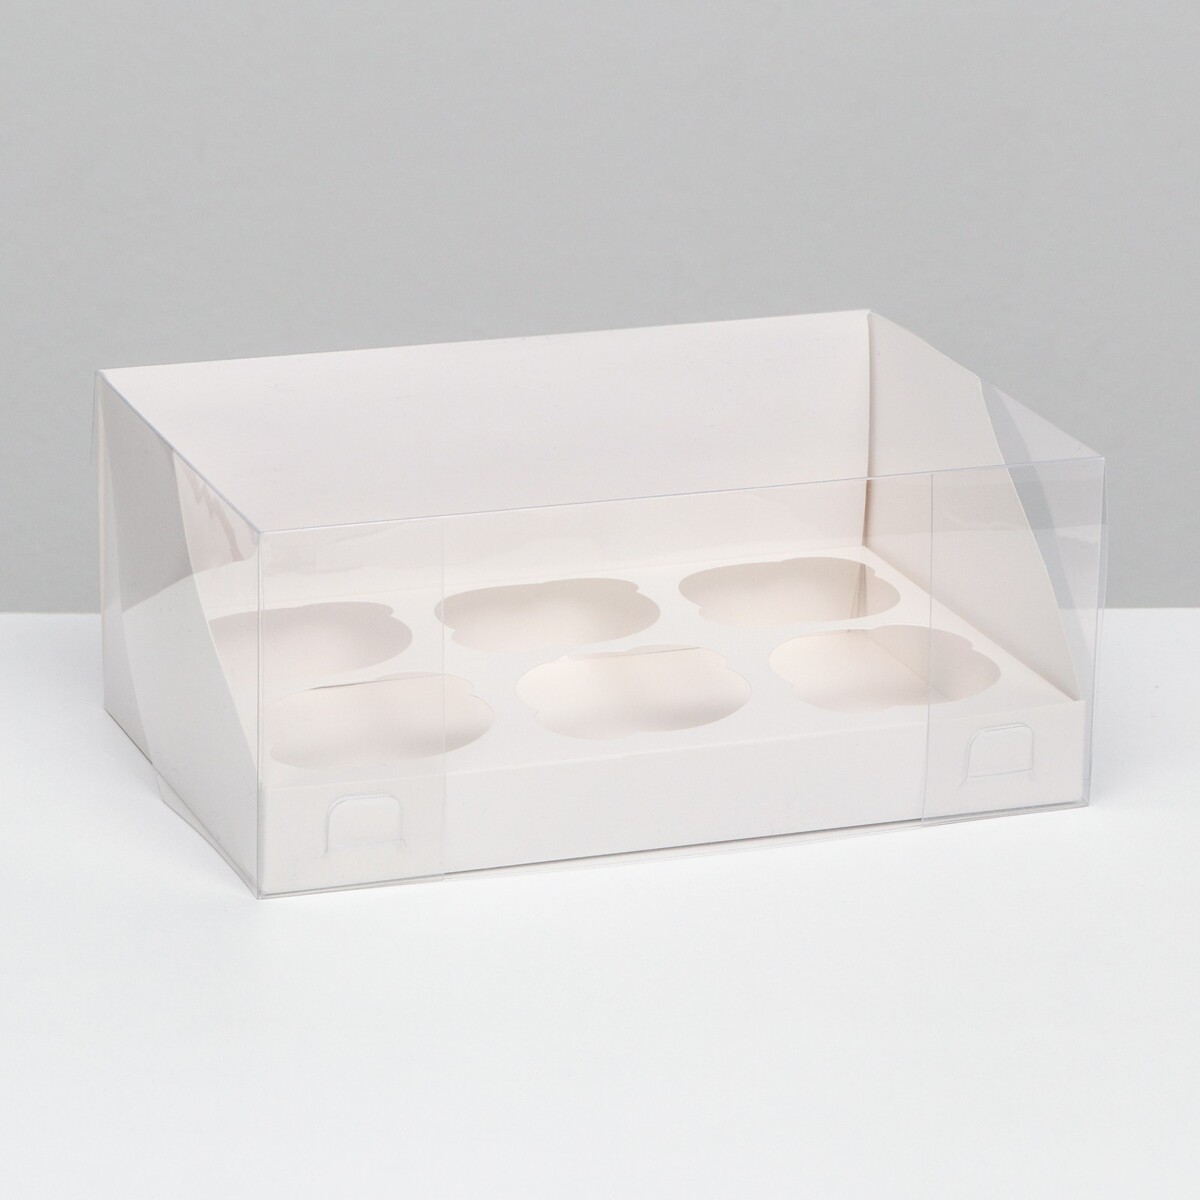 Кондитерская складная коробка для 6 капкейков, белая 23,5 х 16 х 14 см кондитерская складная коробка для 9 капкейков белая 23 5 x 23 x 14 см